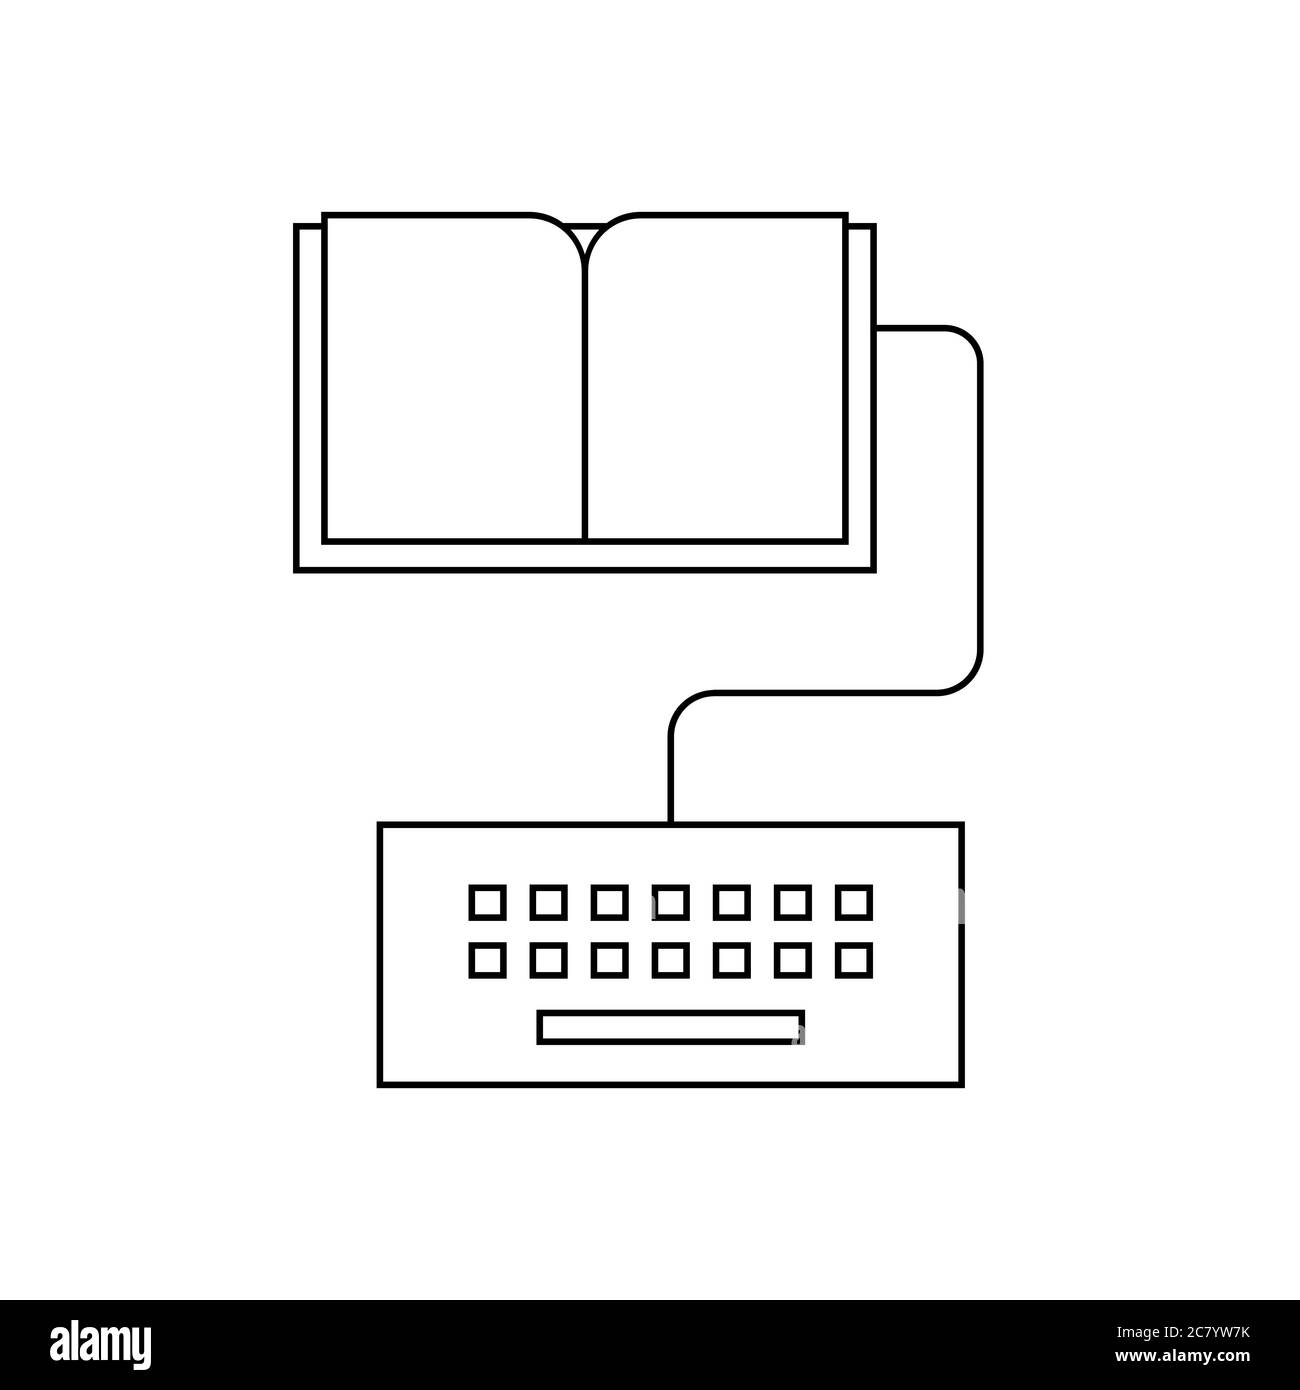 Icona della linea di simboli e-book. Un libro collegato alla tastiera di un computer. Concetto di assegnazione di scrittura. Formazione online, apprendimento a distanza, homeschooling.Vector Illustrazione Vettoriale